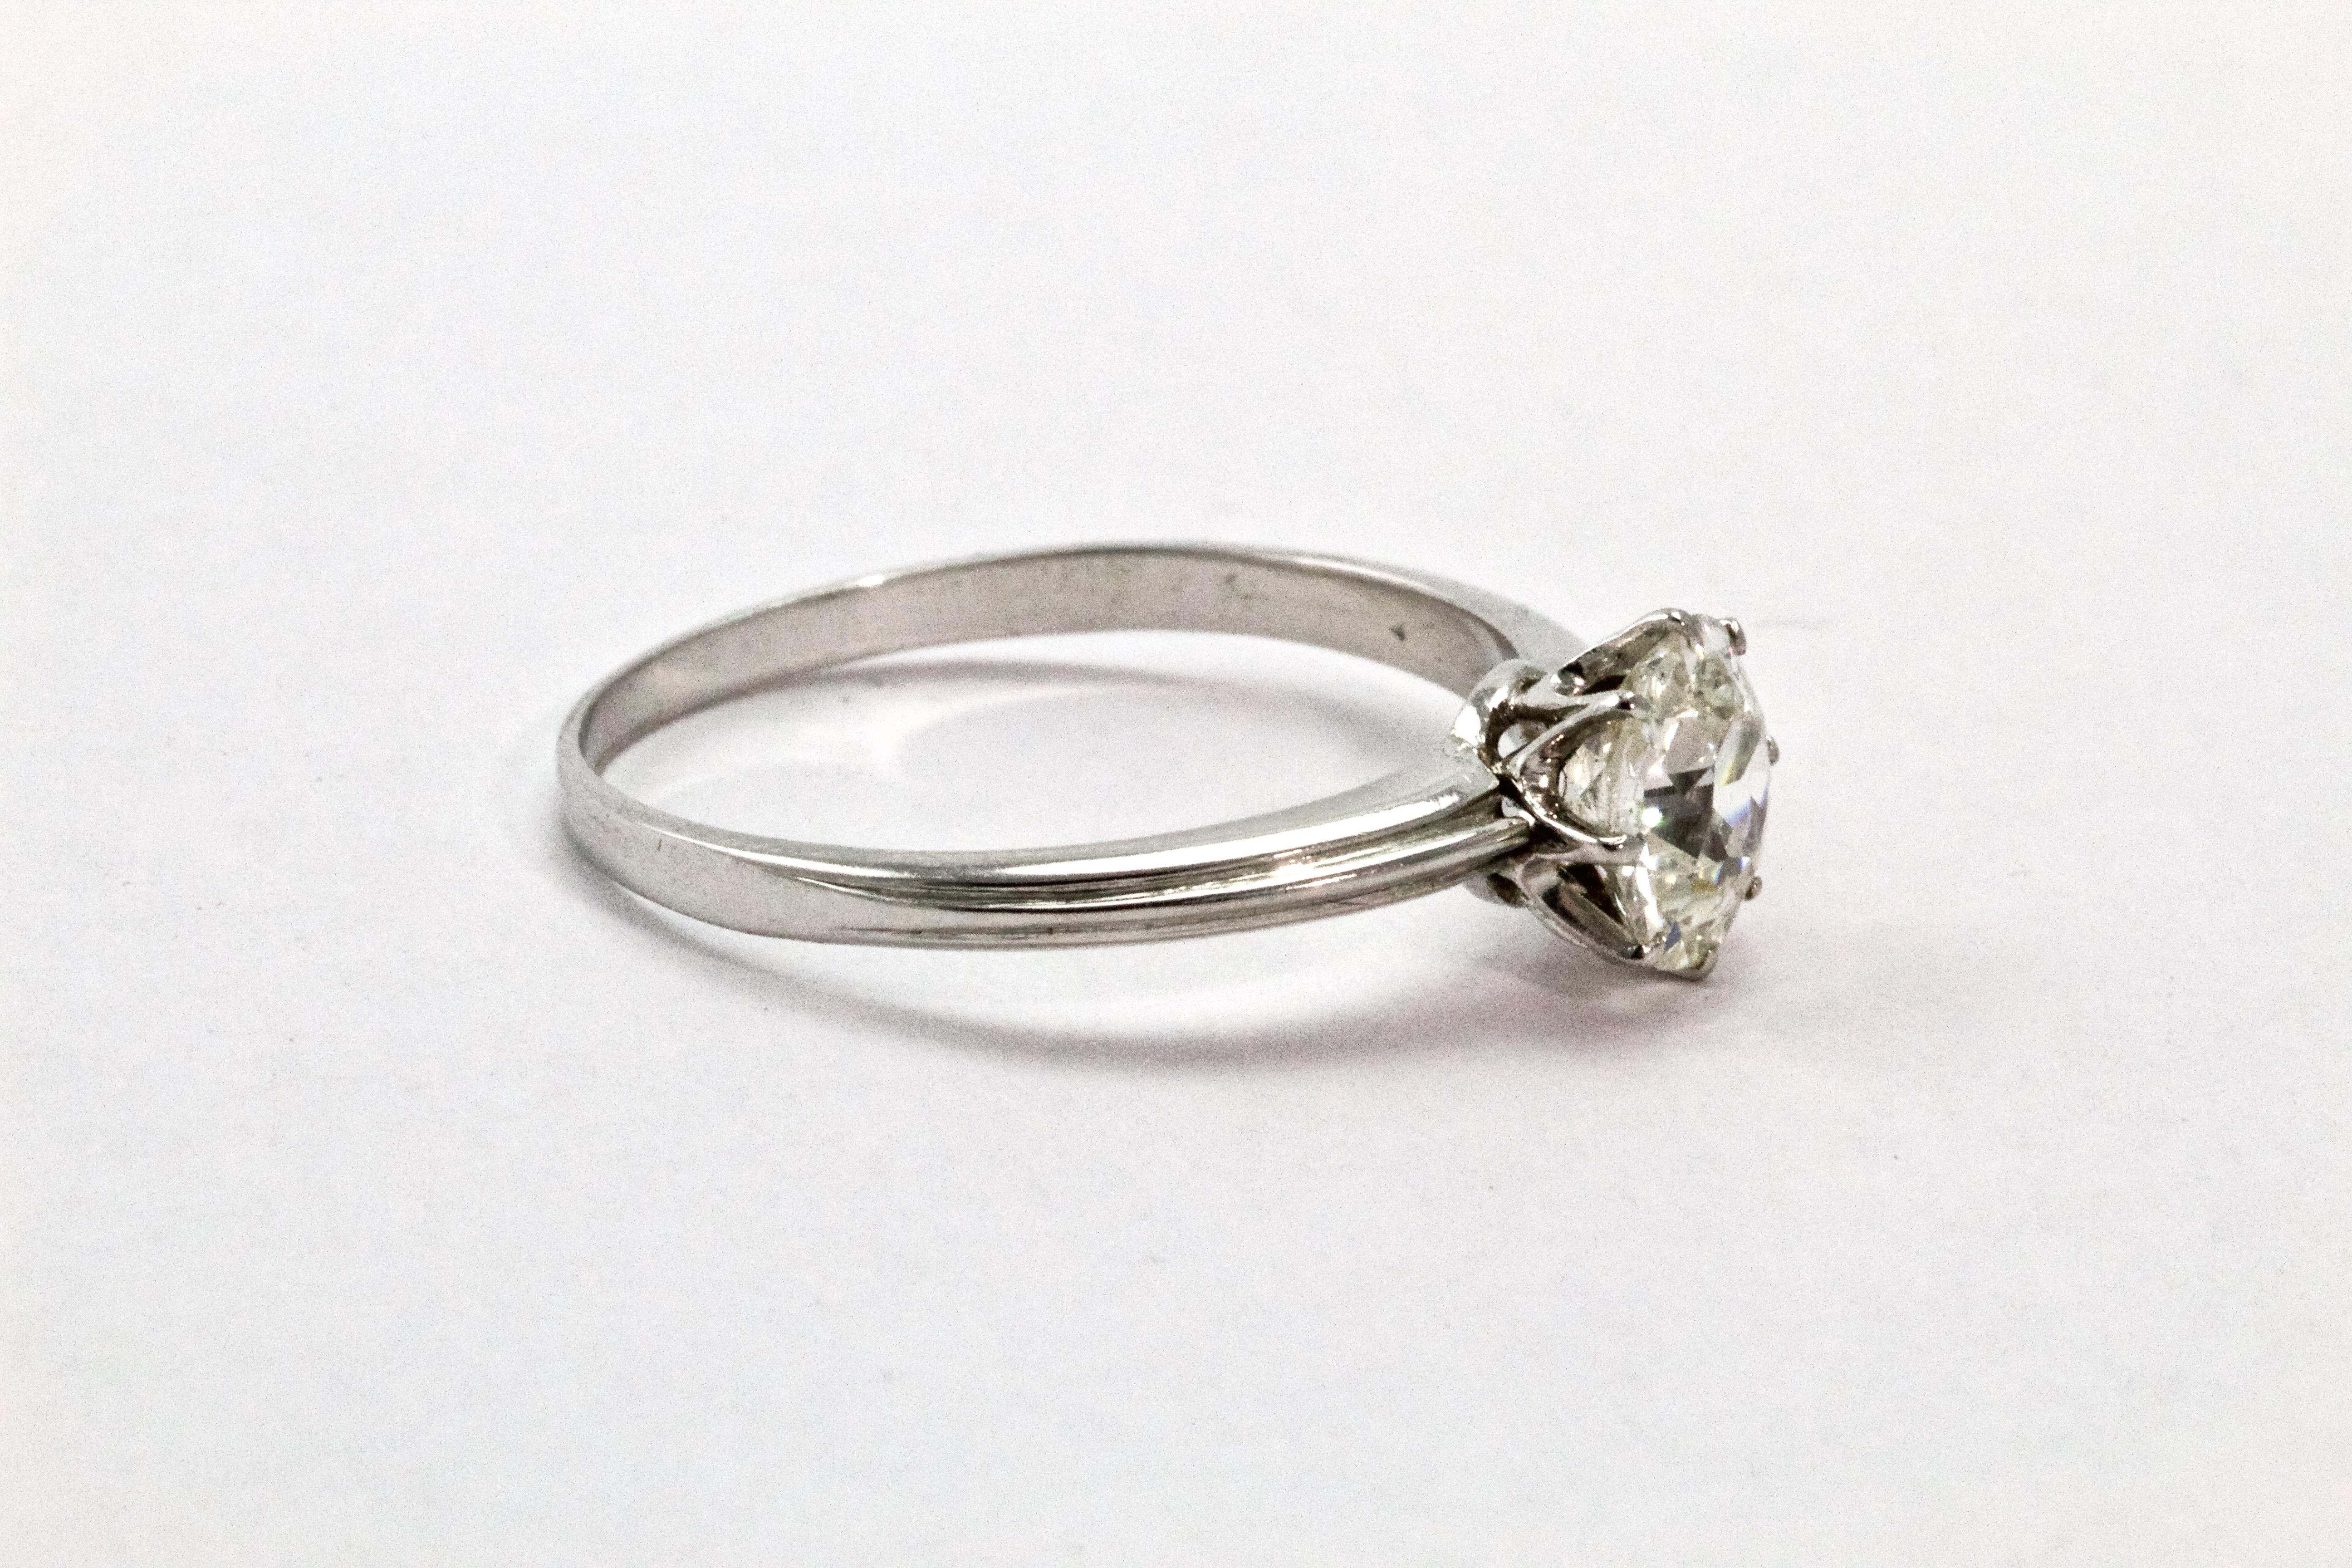 Dieser klassische und atemberaubende Solitär-Diamantring stammt aus den 1920er Jahren und ist fachmännisch gefertigt. Der Stein hat 1,02 Karat. Der Diamant mit altem europäischem Schliff (H - VS2) ist wunderschön in eine handgefertigte Spannzange